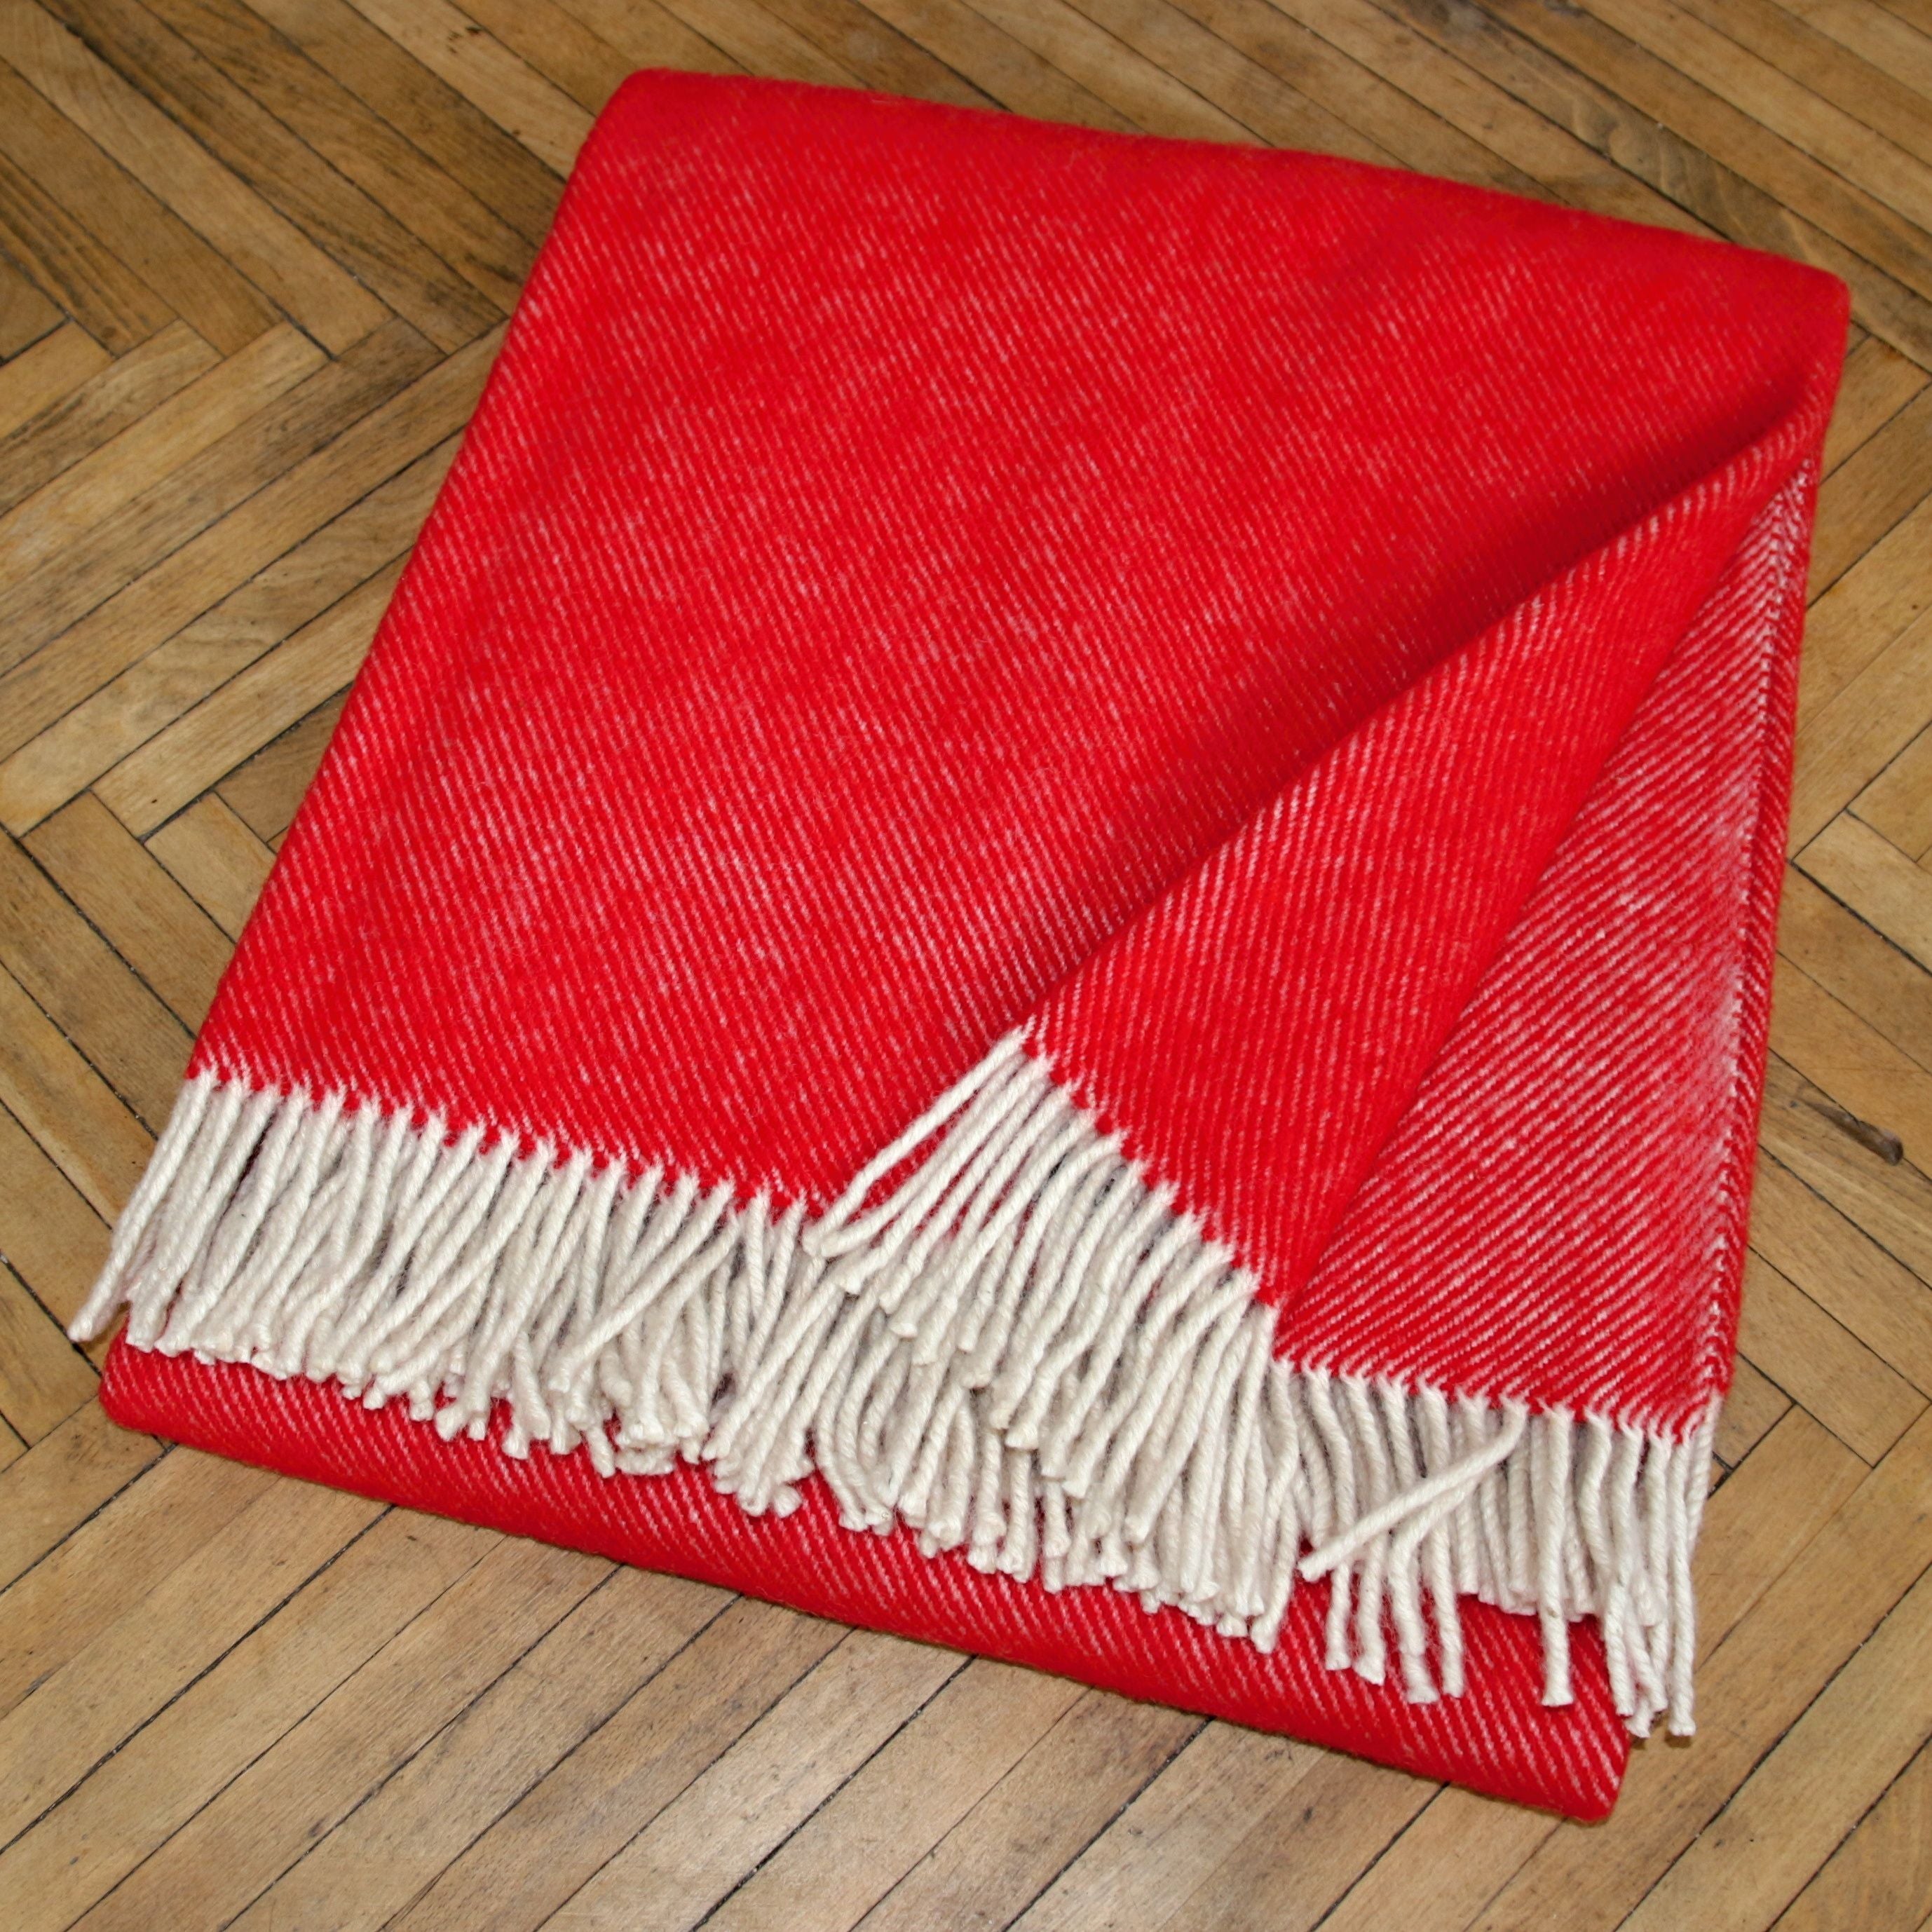 Sheep wool blanket - red